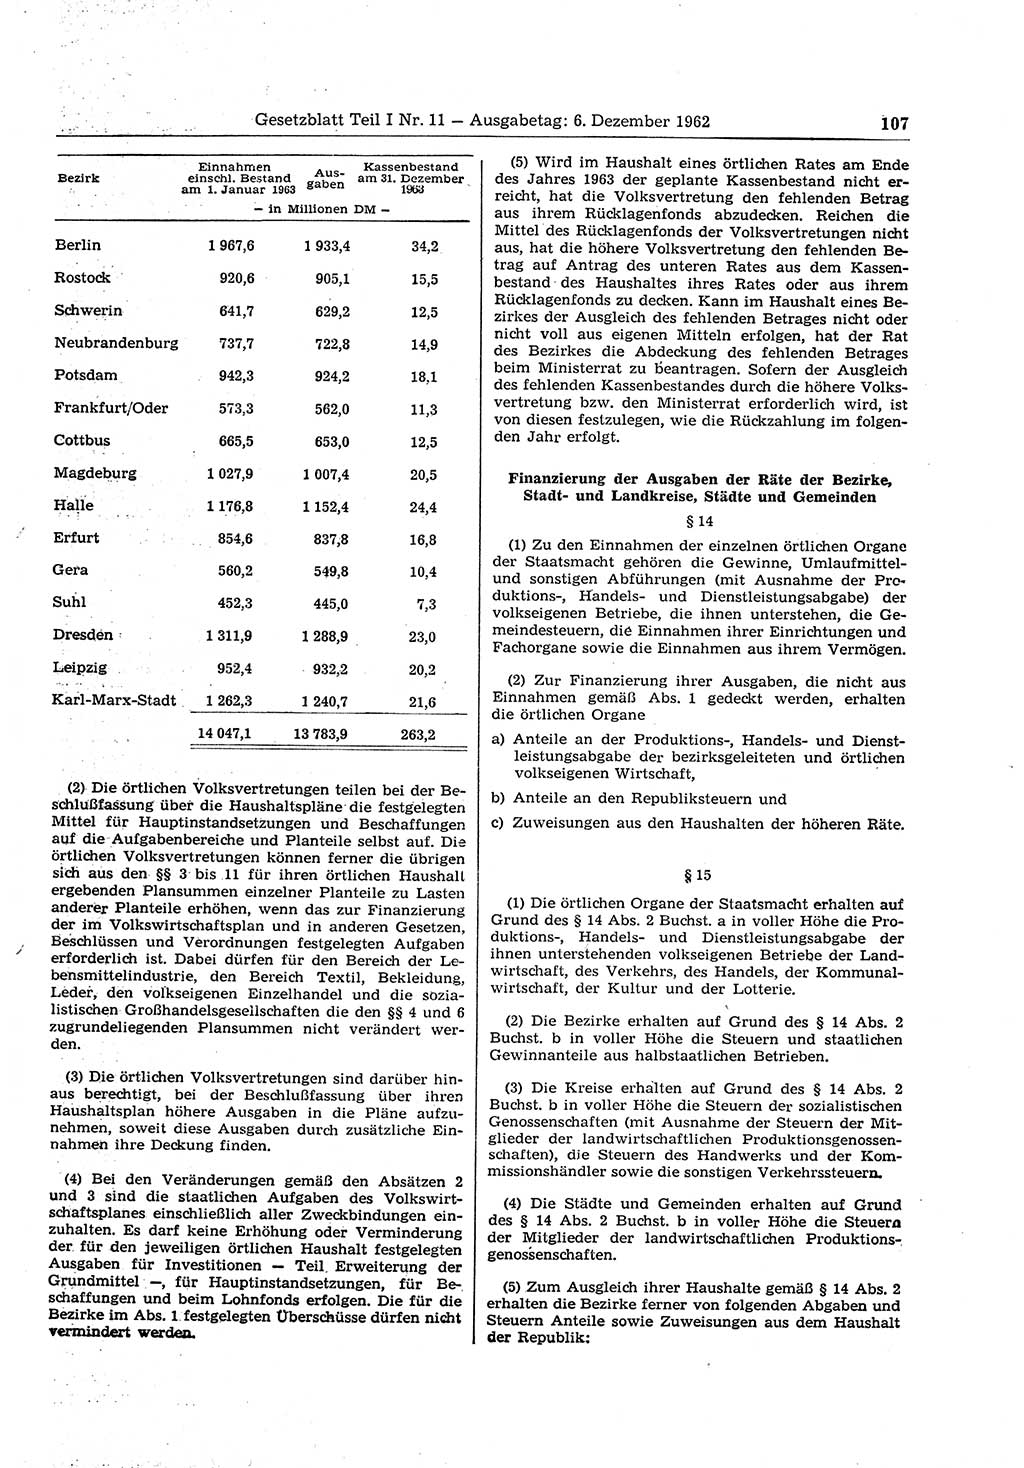 Gesetzblatt (GBl.) der Deutschen Demokratischen Republik (DDR) Teil Ⅰ 1962, Seite 107 (GBl. DDR Ⅰ 1962, S. 107)